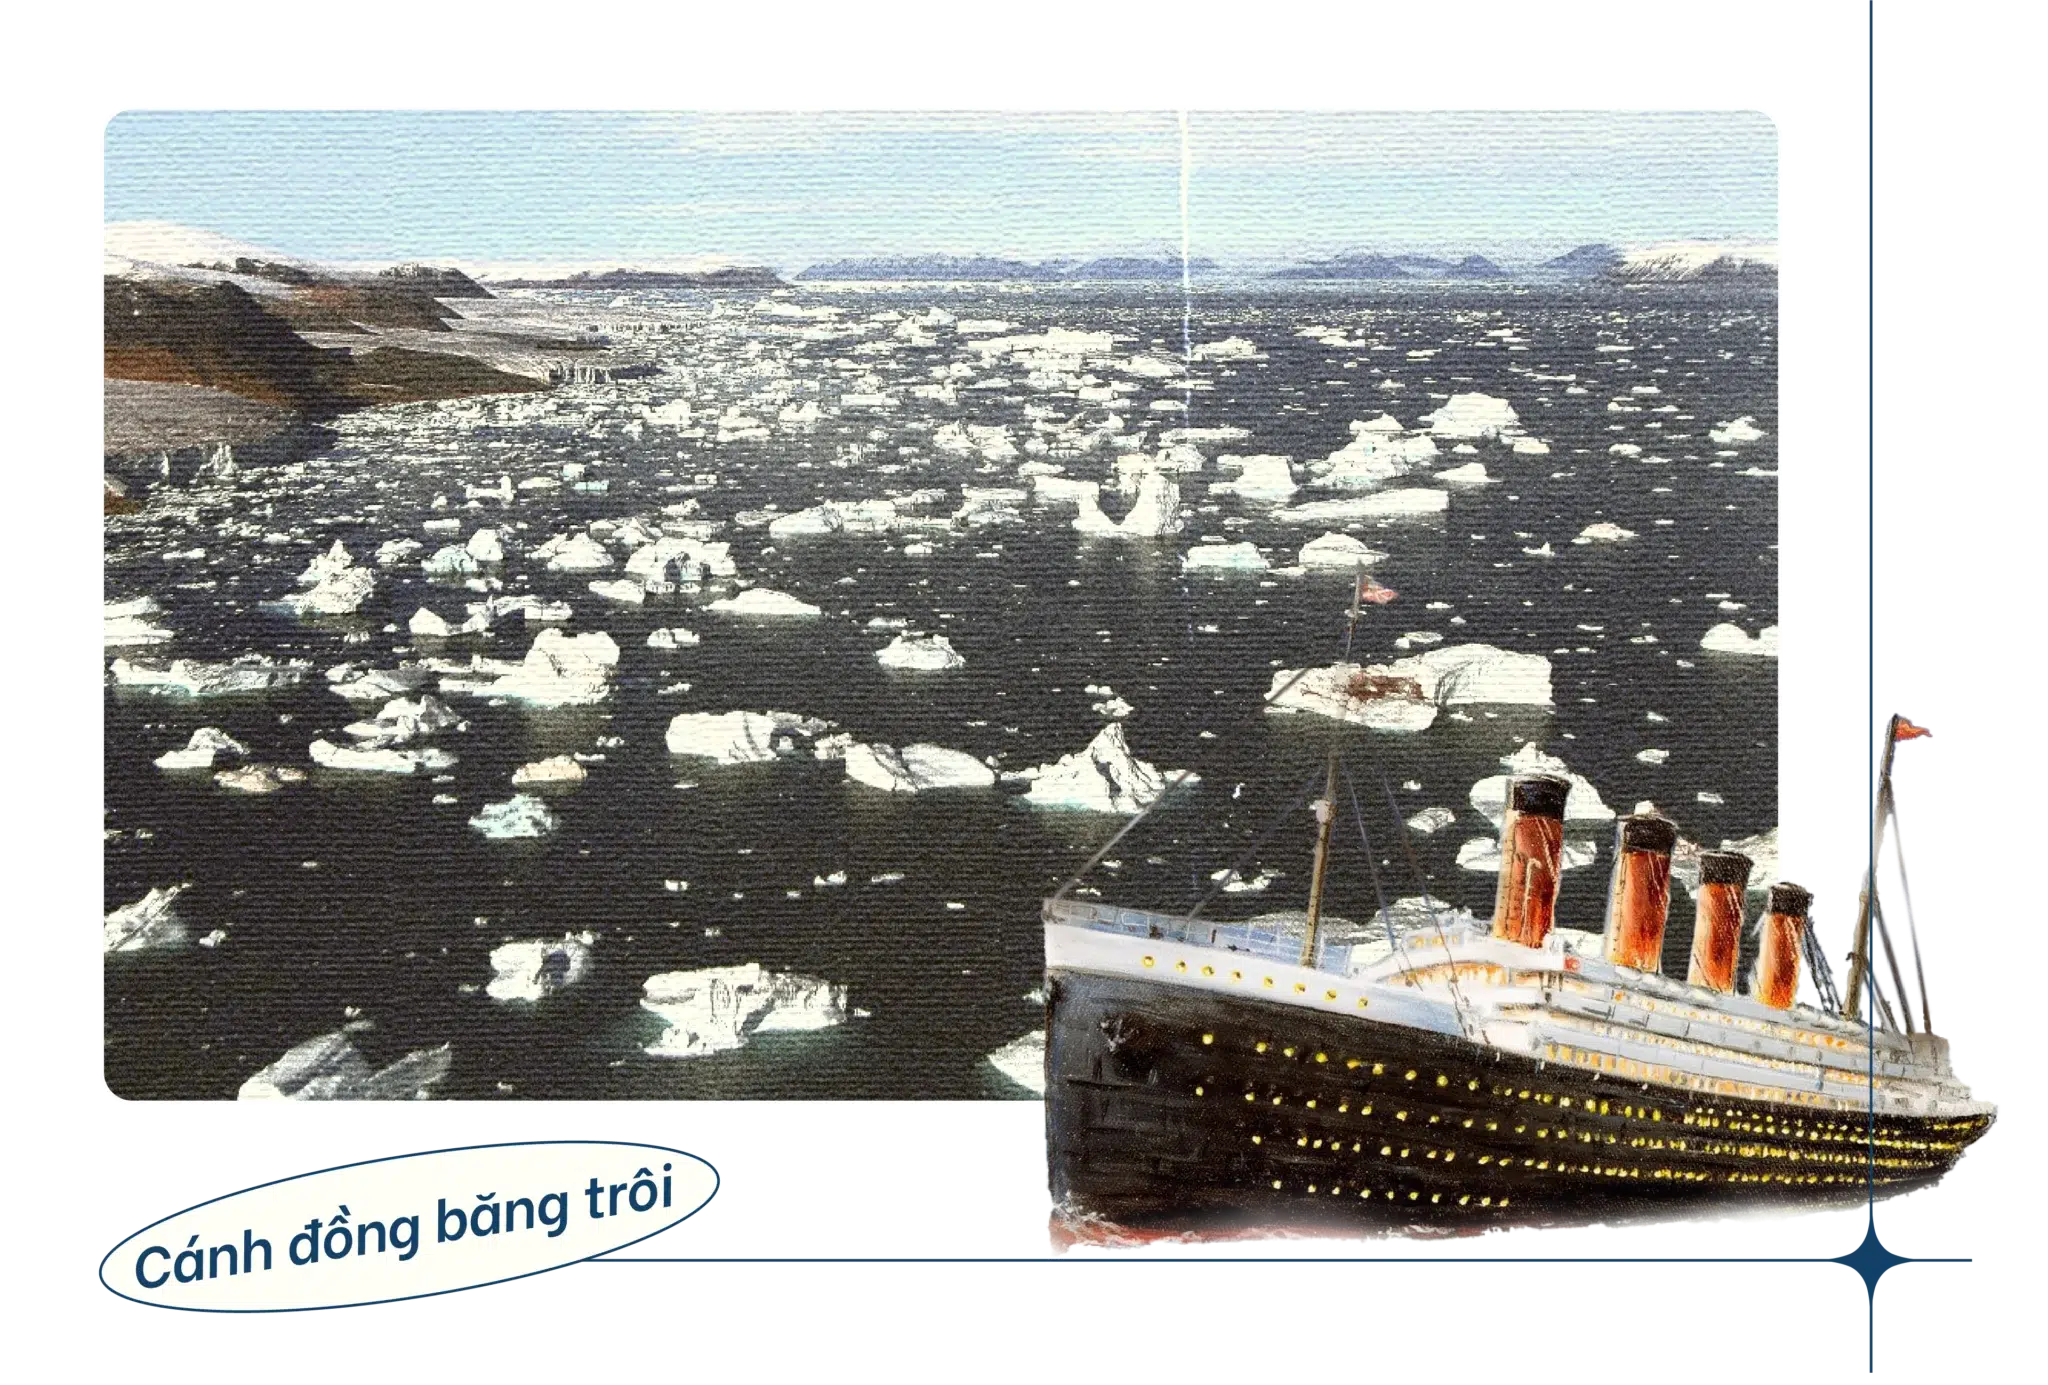 Titanic cánh đồng băng trôi